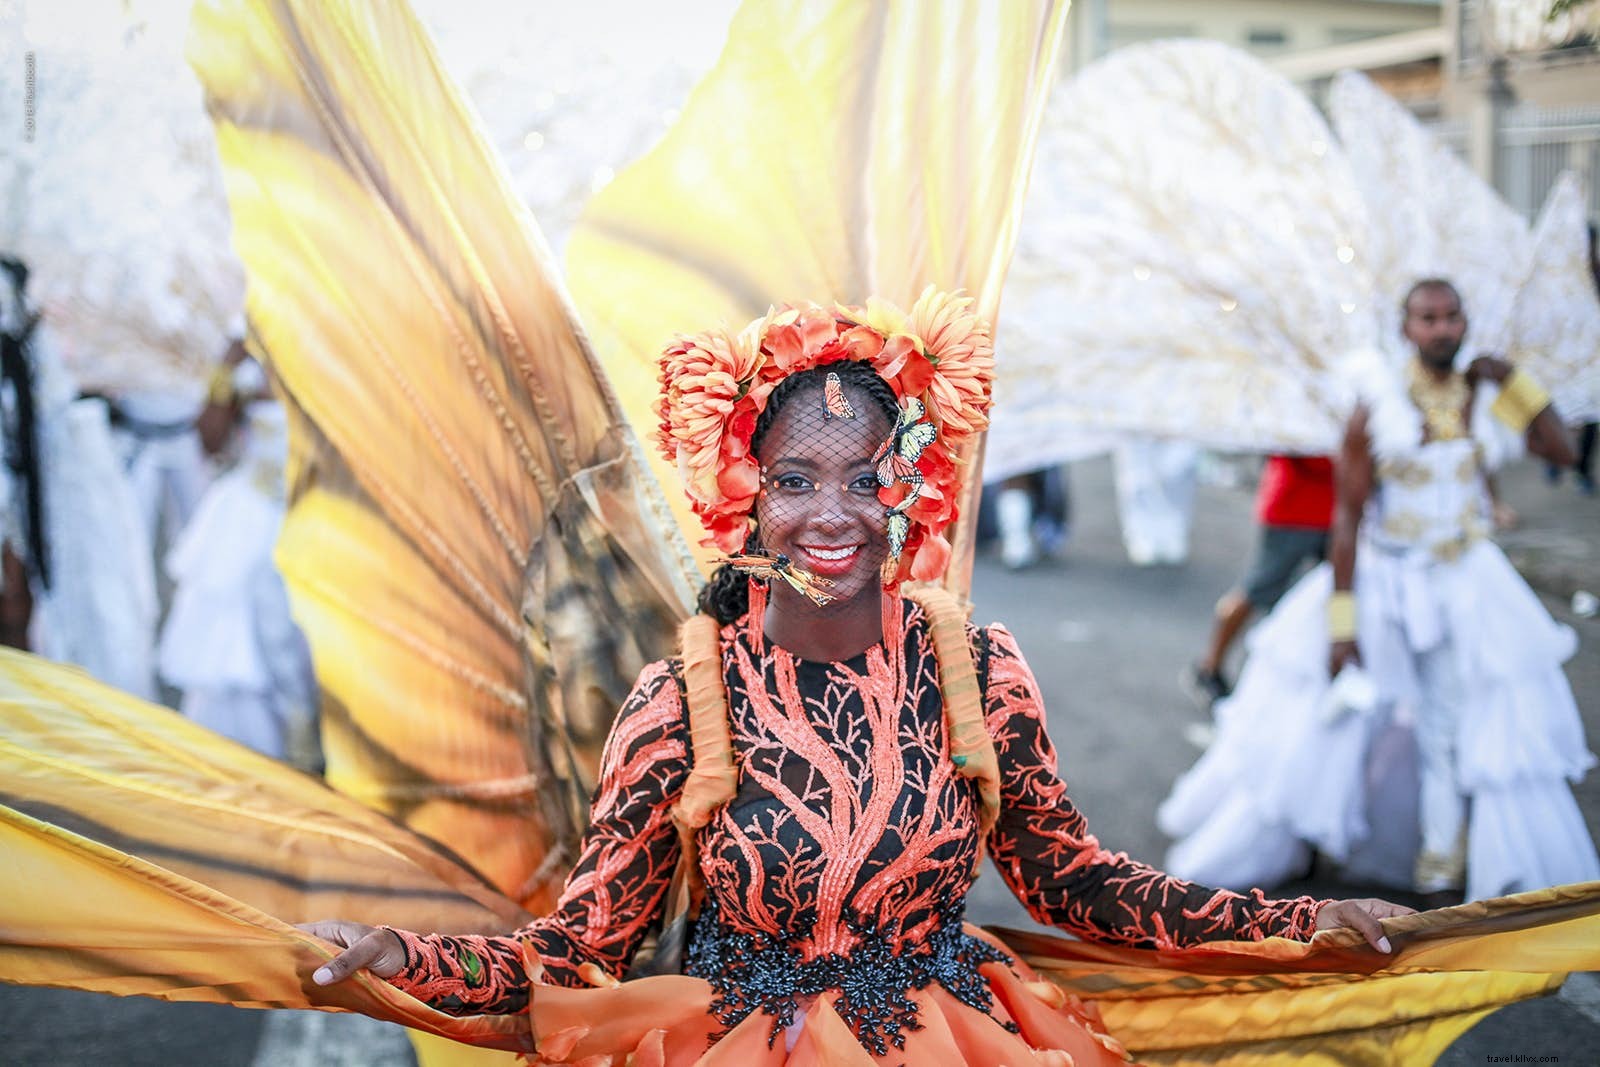 Karnaval Amerika Latin dan Karibia untuk setiap wisatawan 